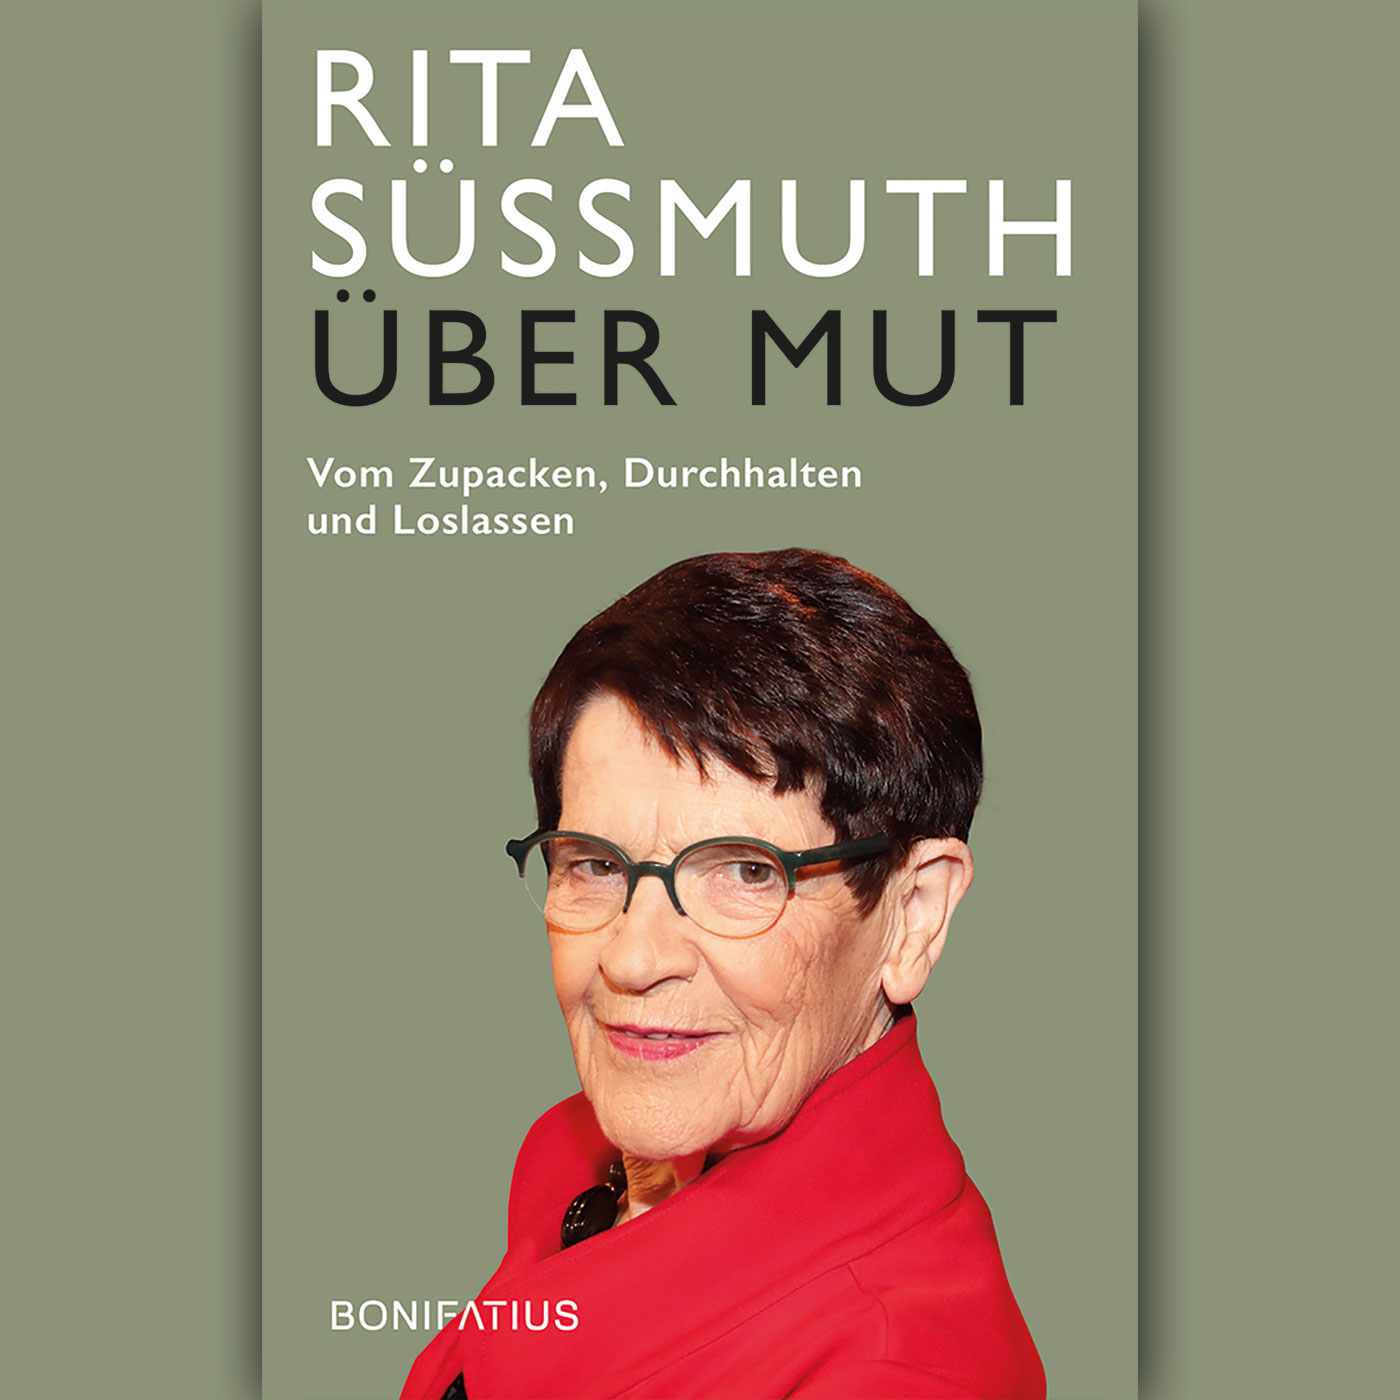 Rita Süssmuth: "Über Mut"